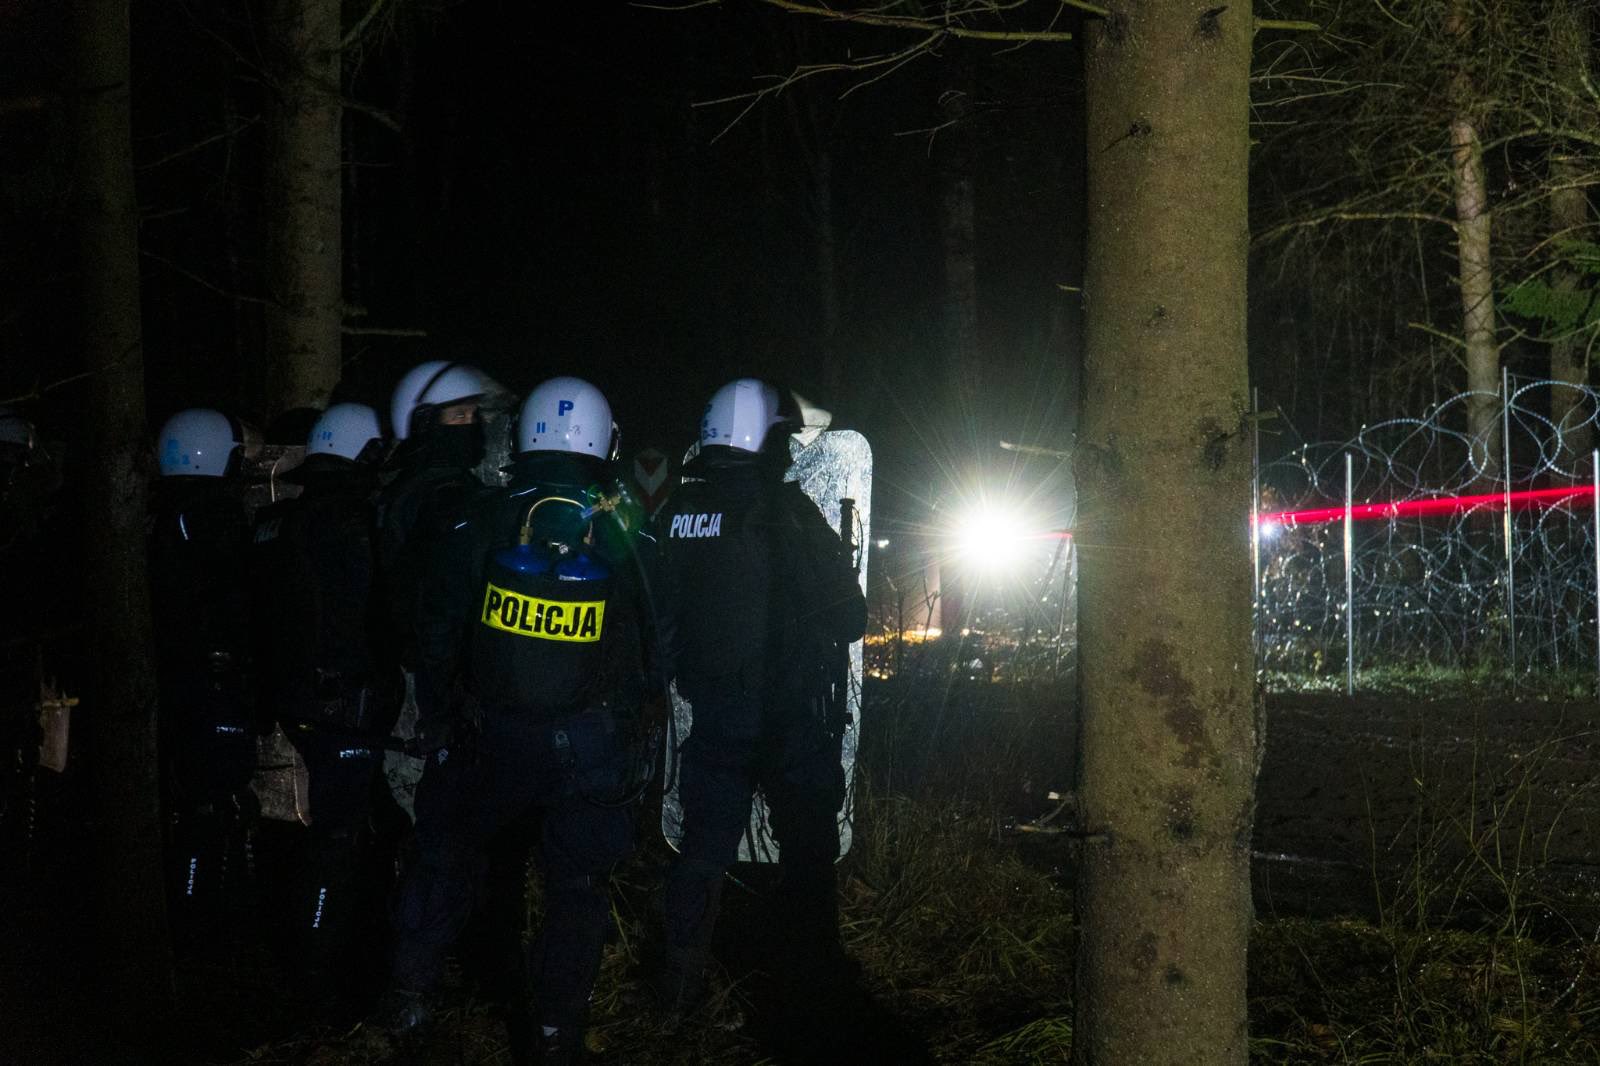 150 мигрантов пытались прорваться в Польшу: пограничников слепили лазерами – фото, видео